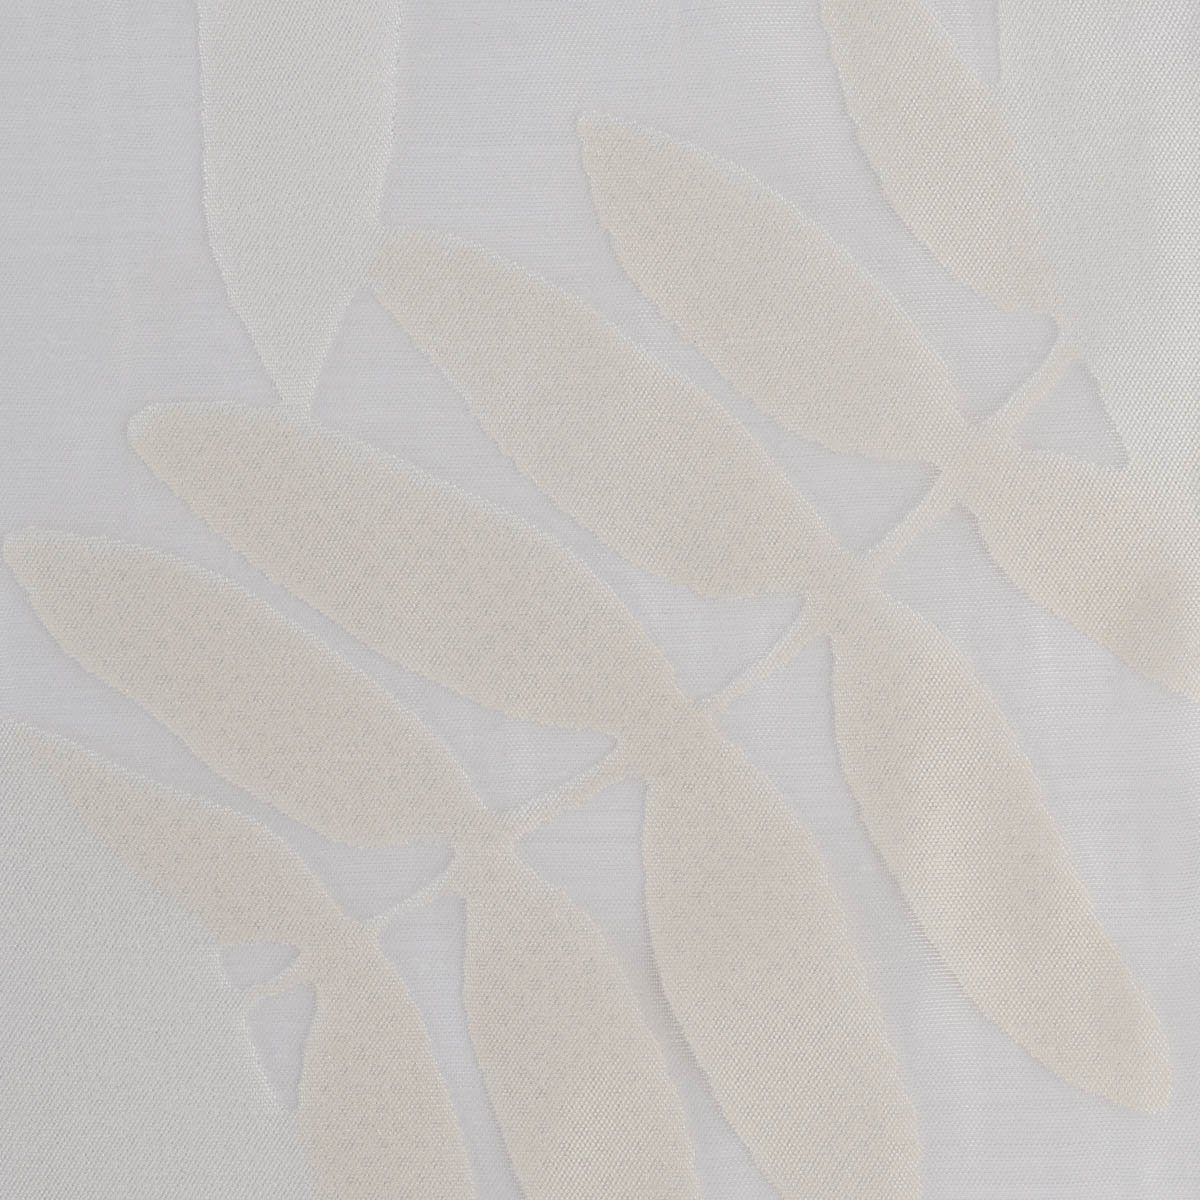 Bleiband, Gardinenstoff leicht 295cm, überbreit perforiert, Rasch weiß Organza, mit Ausbrenner Meterware Madagaskar Blätter Textil